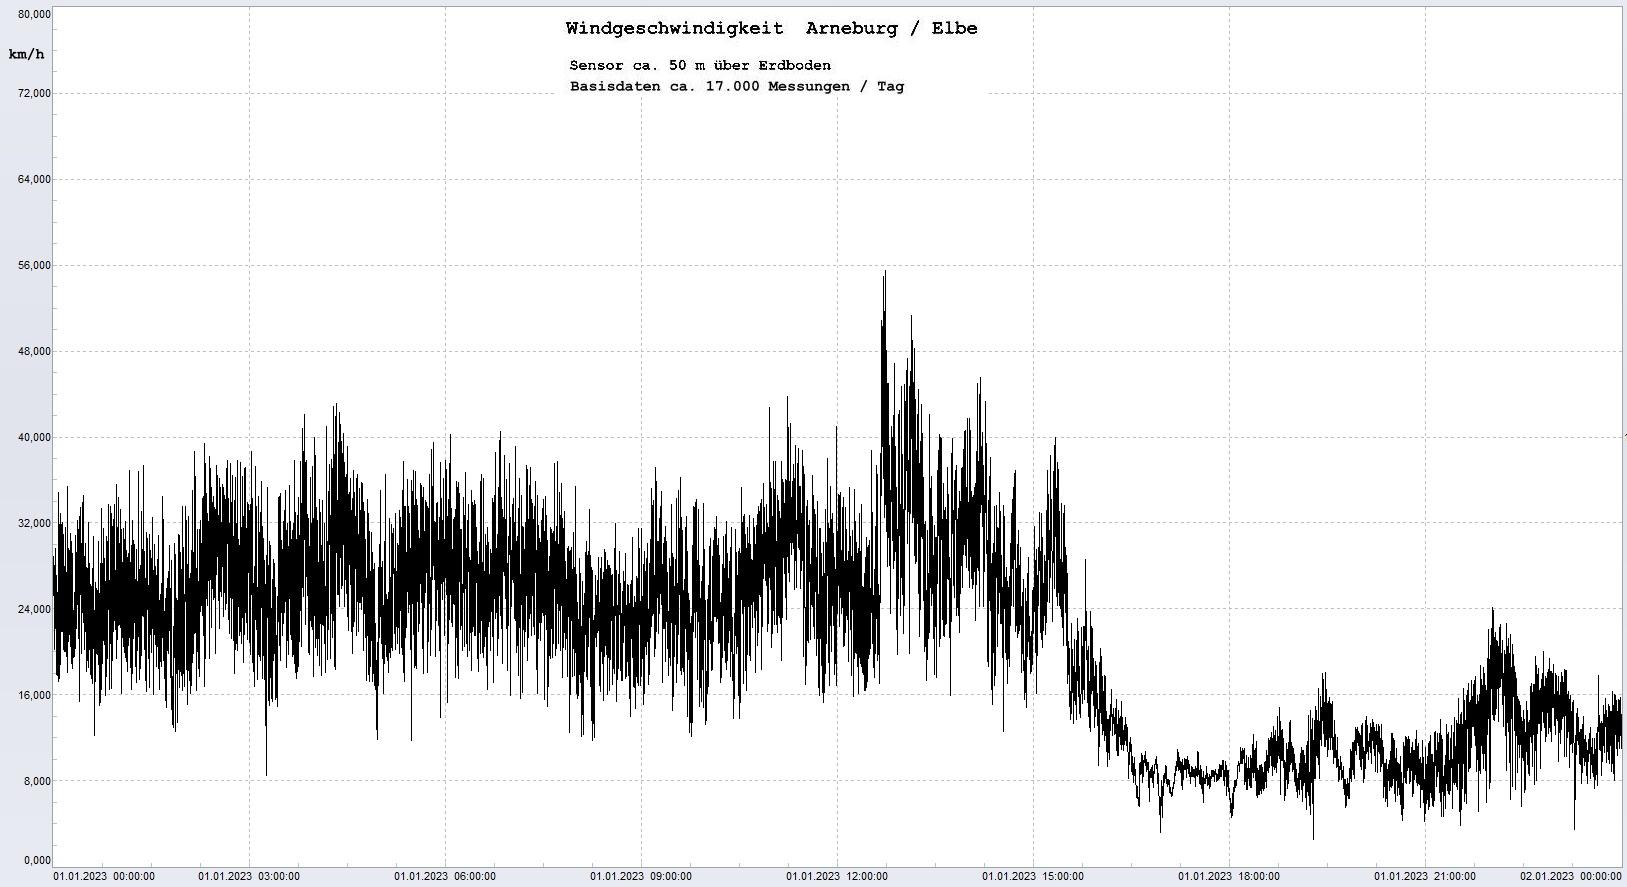 Arneburg Tages-Diagramm Winddaten, 01.01.2023
  Diagramm, Sensor auf Gebäude, ca. 50 m über Erdboden, Basis: 5s-Aufzeichnung